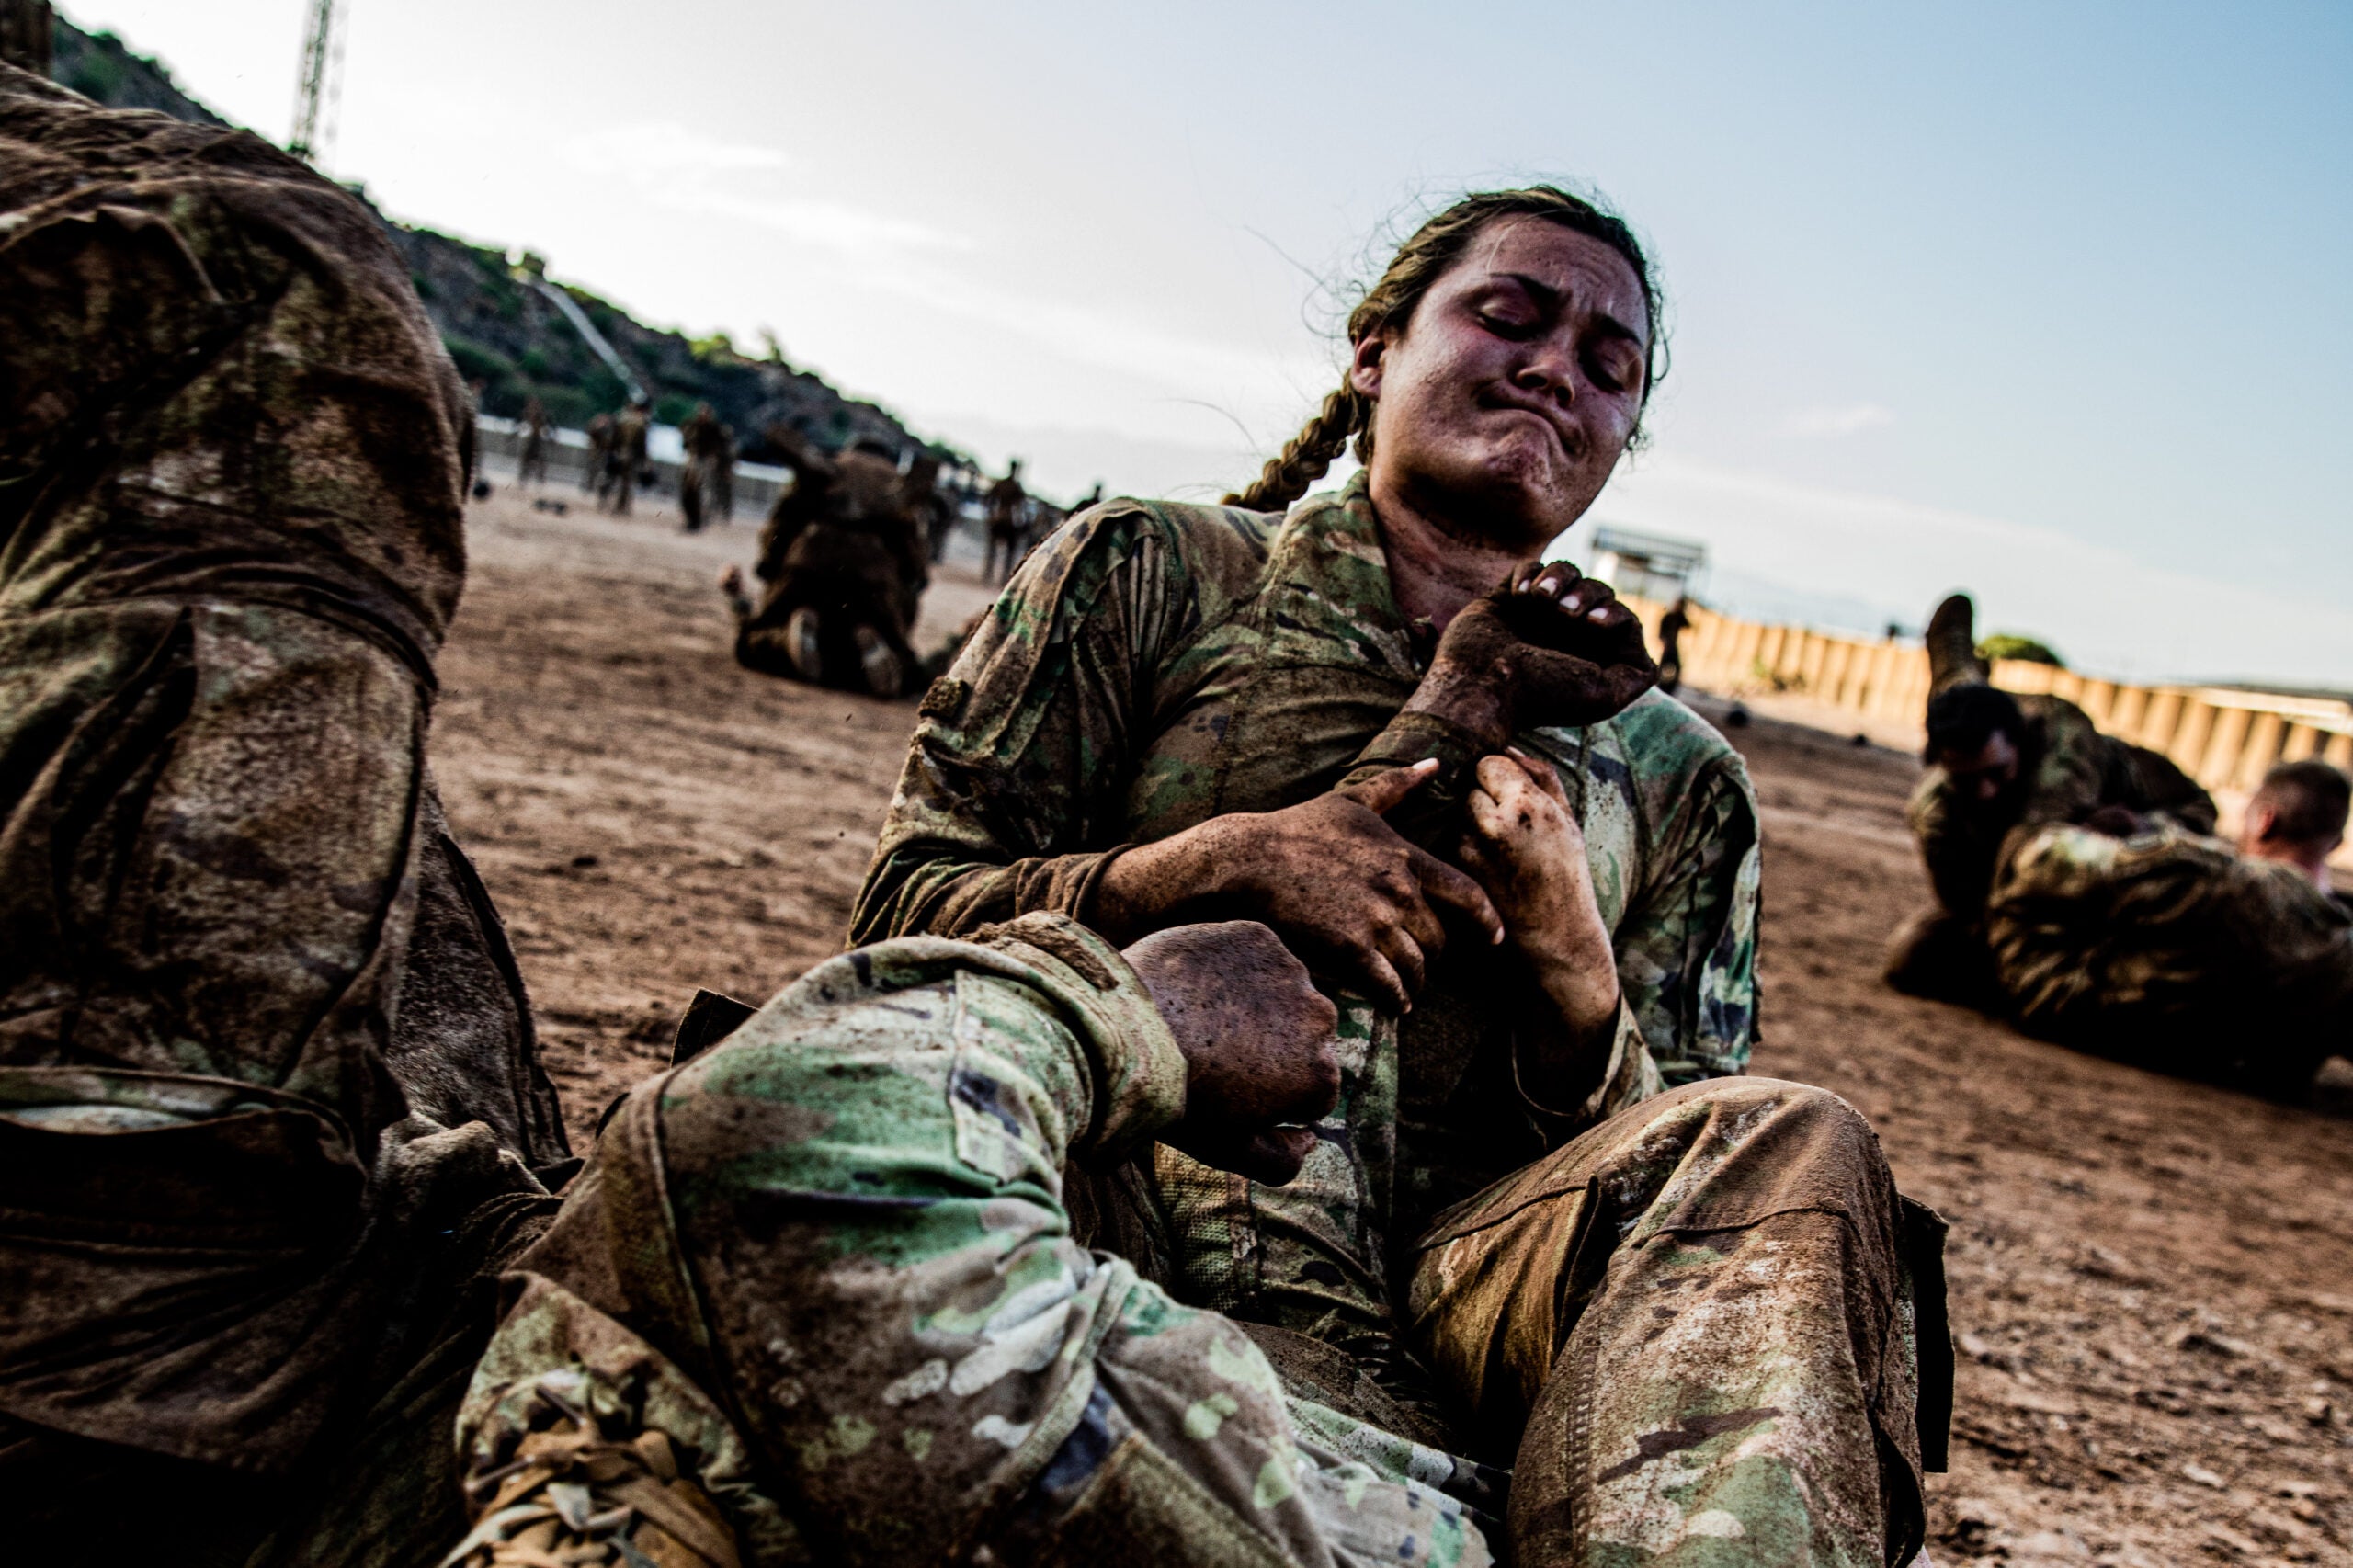 Des militaires reçoivent le « Scorpion » au cours de commando du désert français